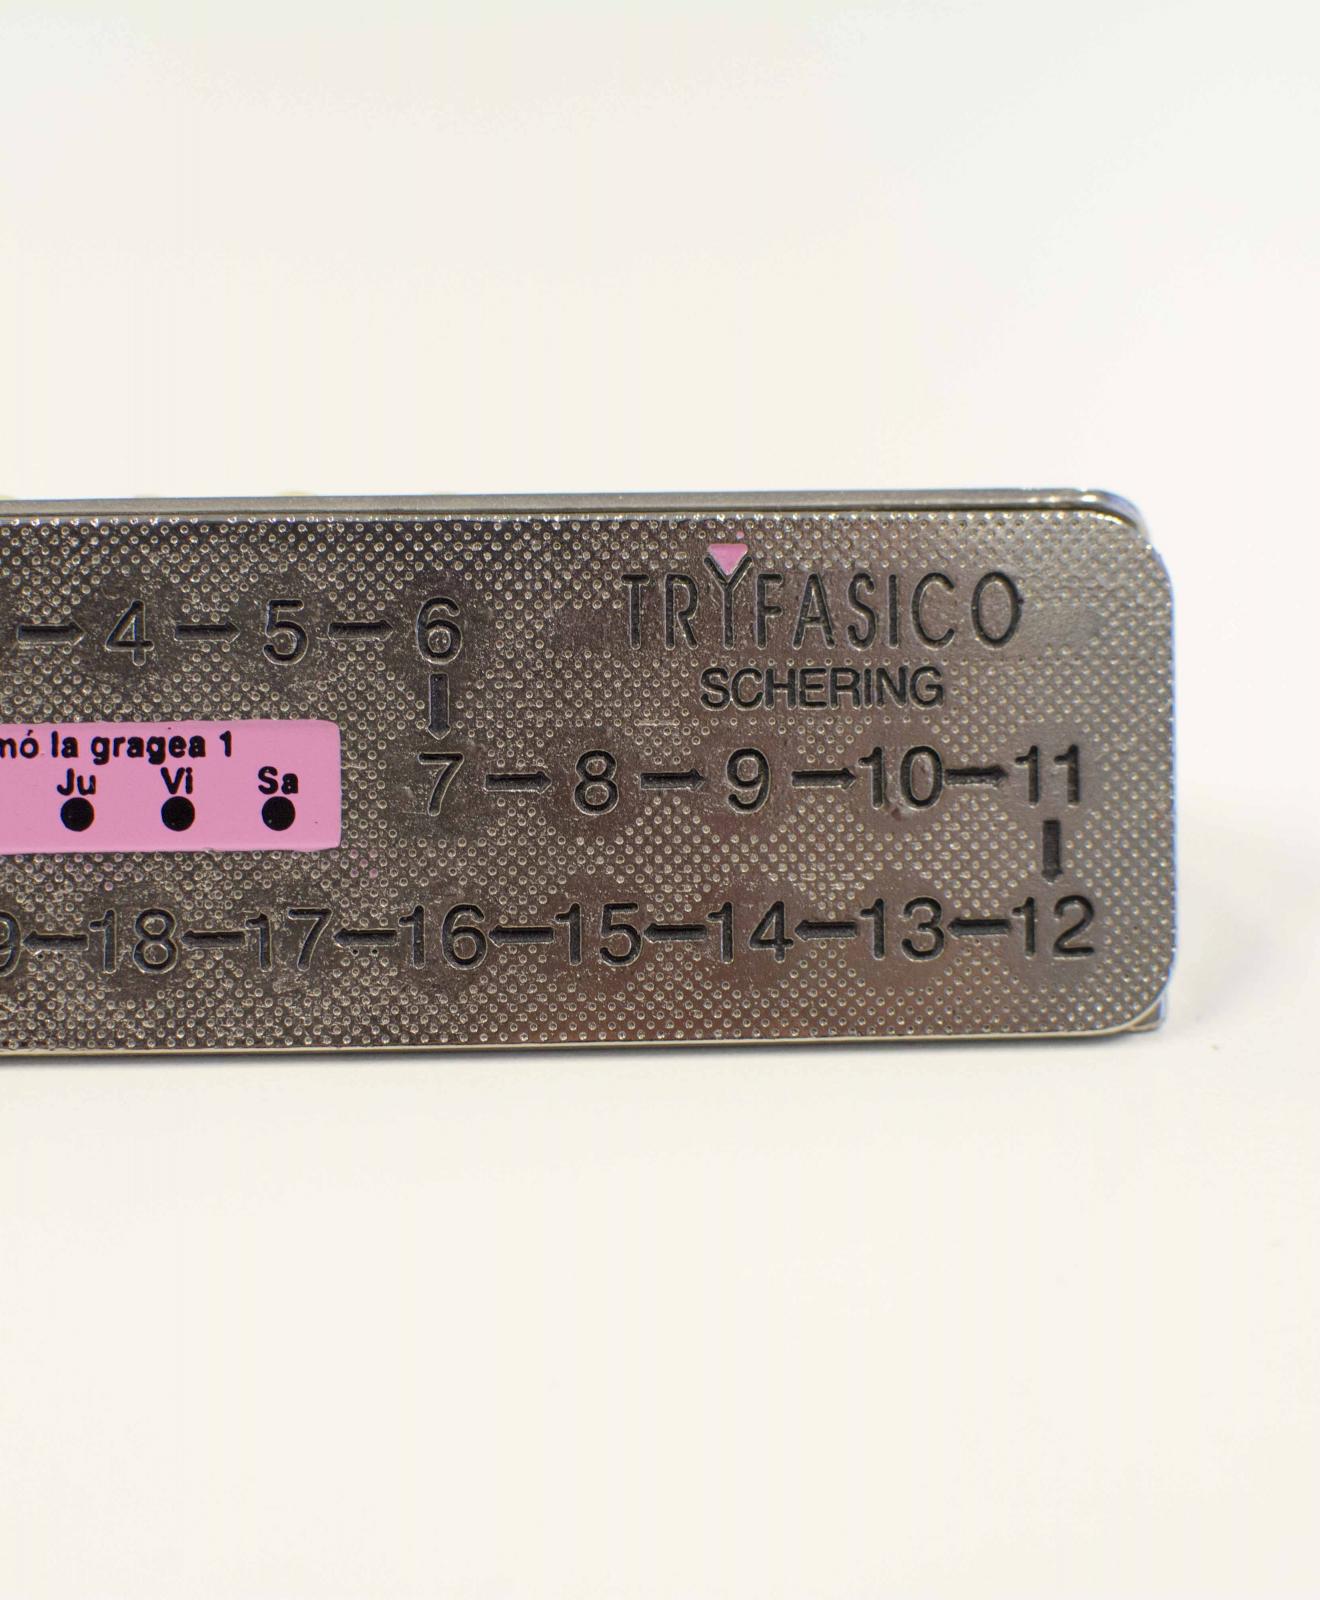 Pieza metálica rectangular con numeración incisa del 1 al 21 y un calendario semana. El número 1 y el calendario semanal están enmarcados en rosa